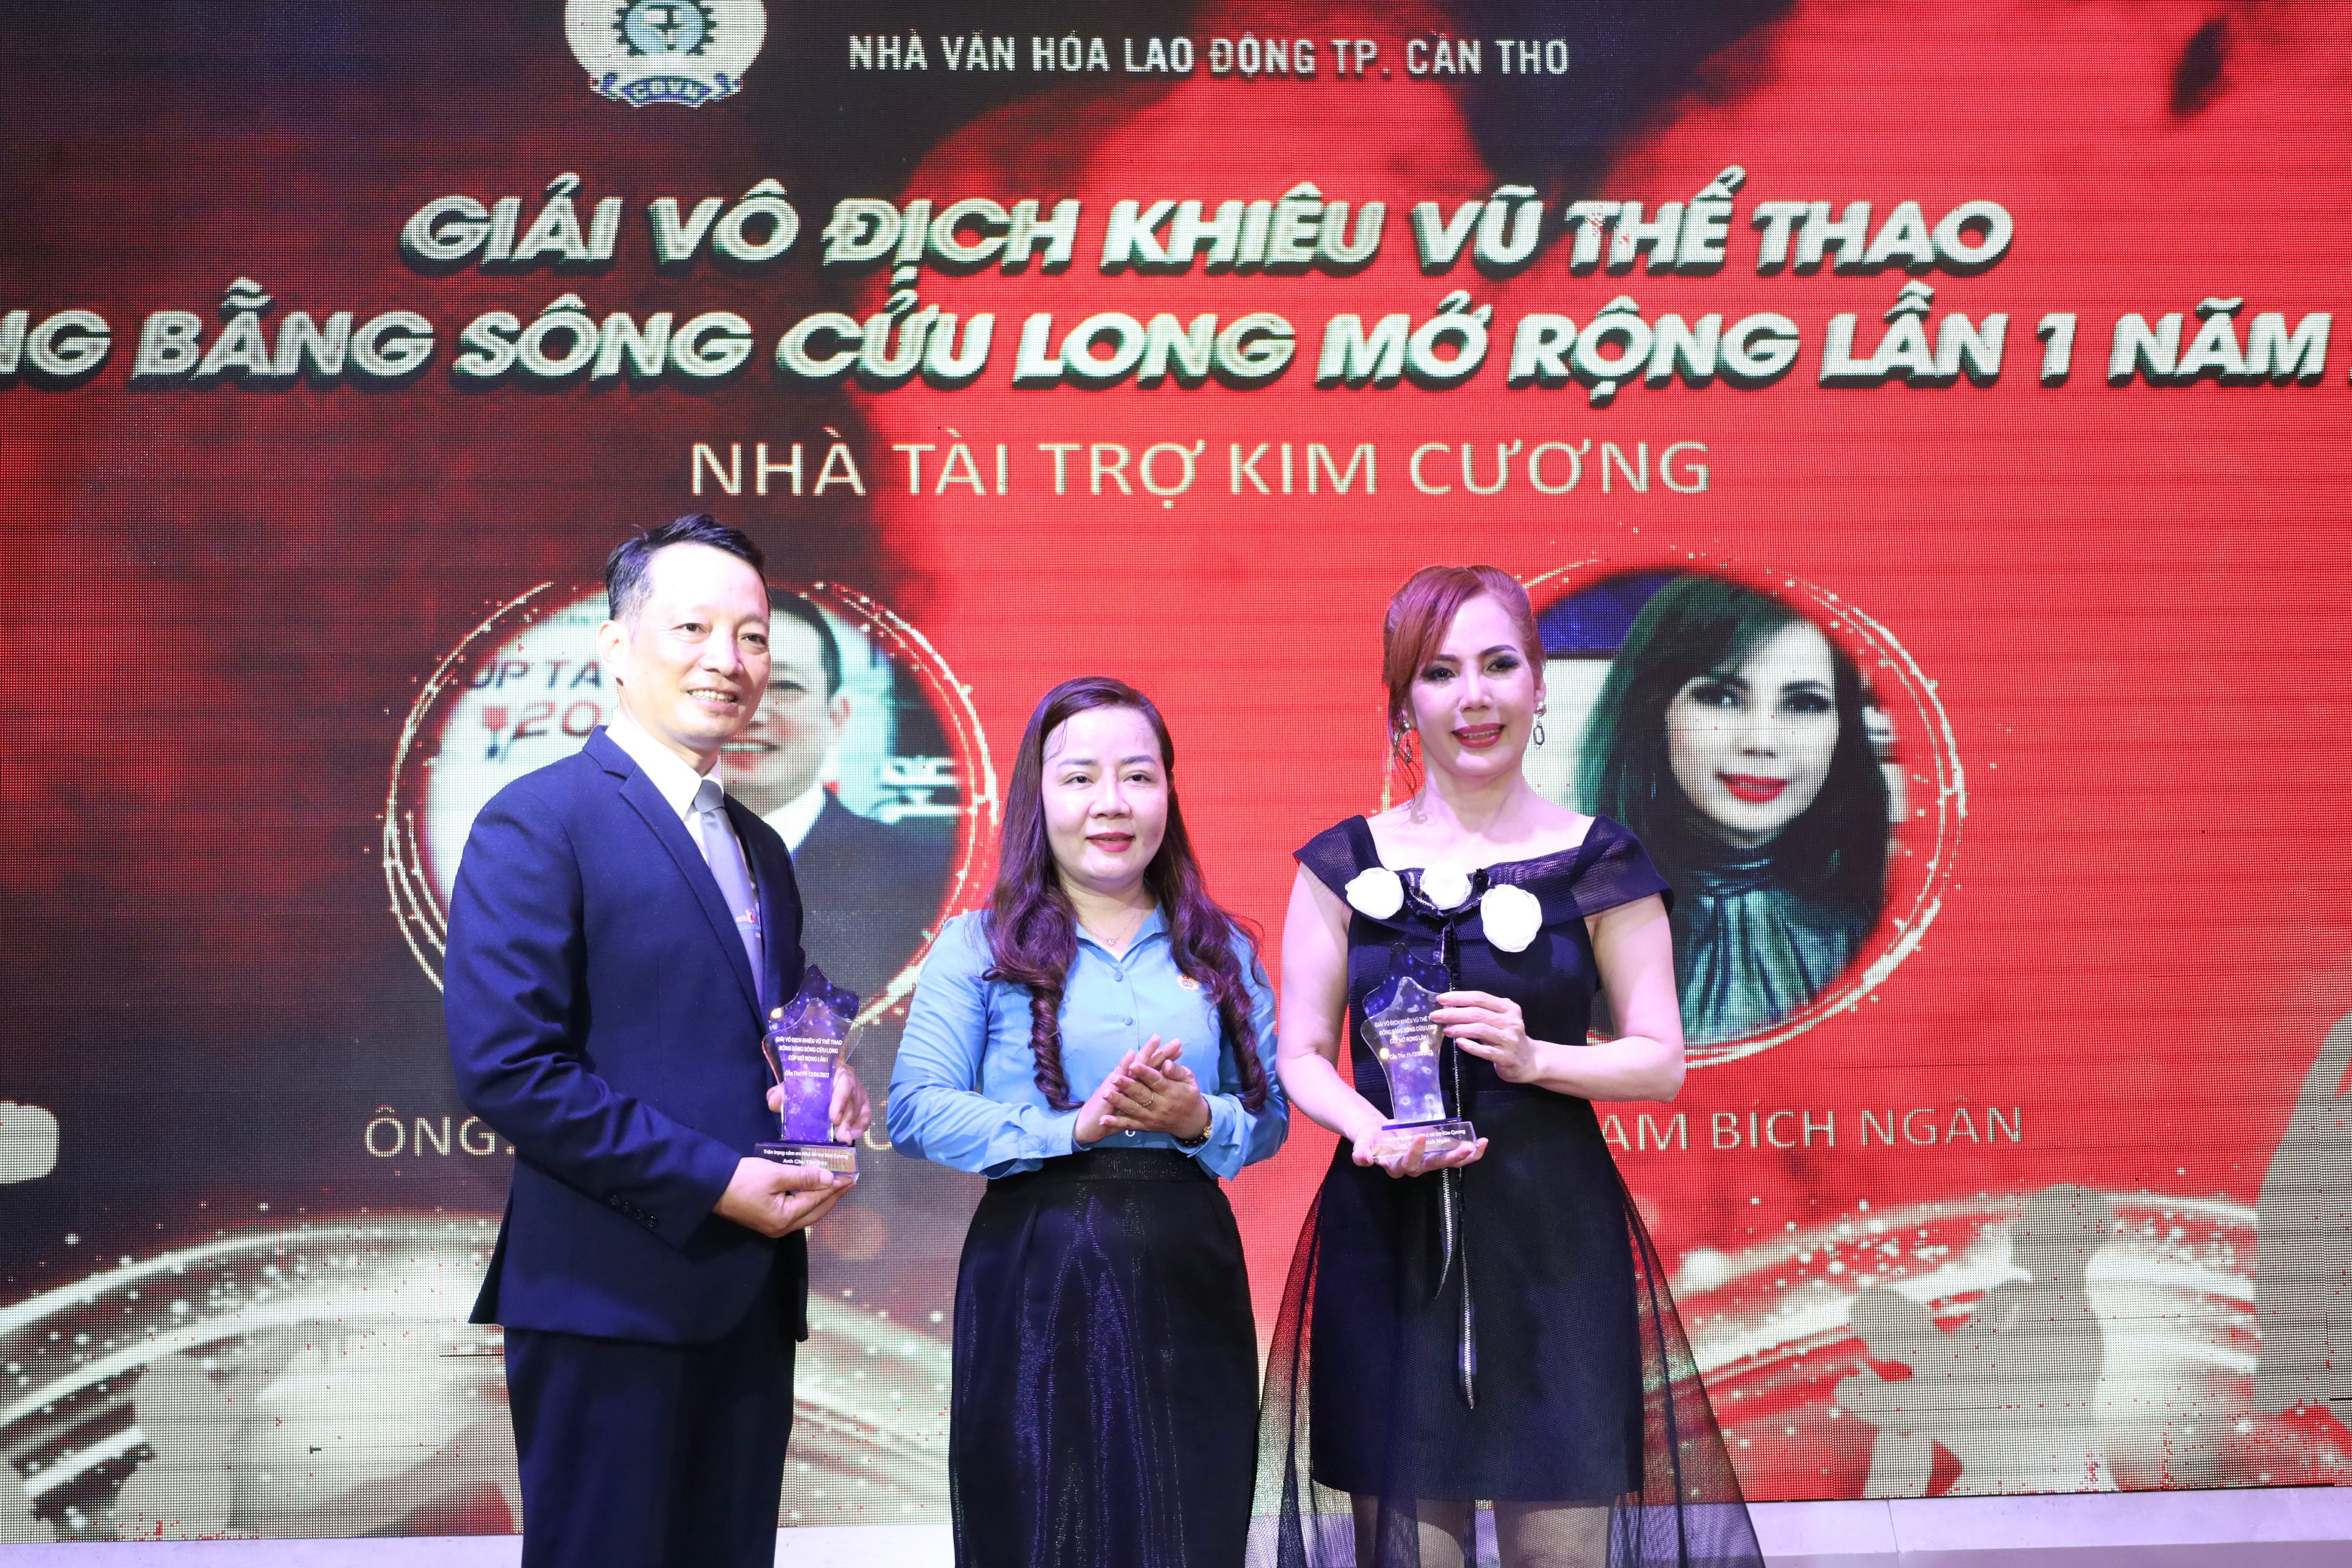 Bà Nguyễn Thị Phương Kiều - Giám đốc Nhà Văn hóa Lao Động TP. Cần Thơ trao kỷ niệm chương cho các nhà tài trợ.